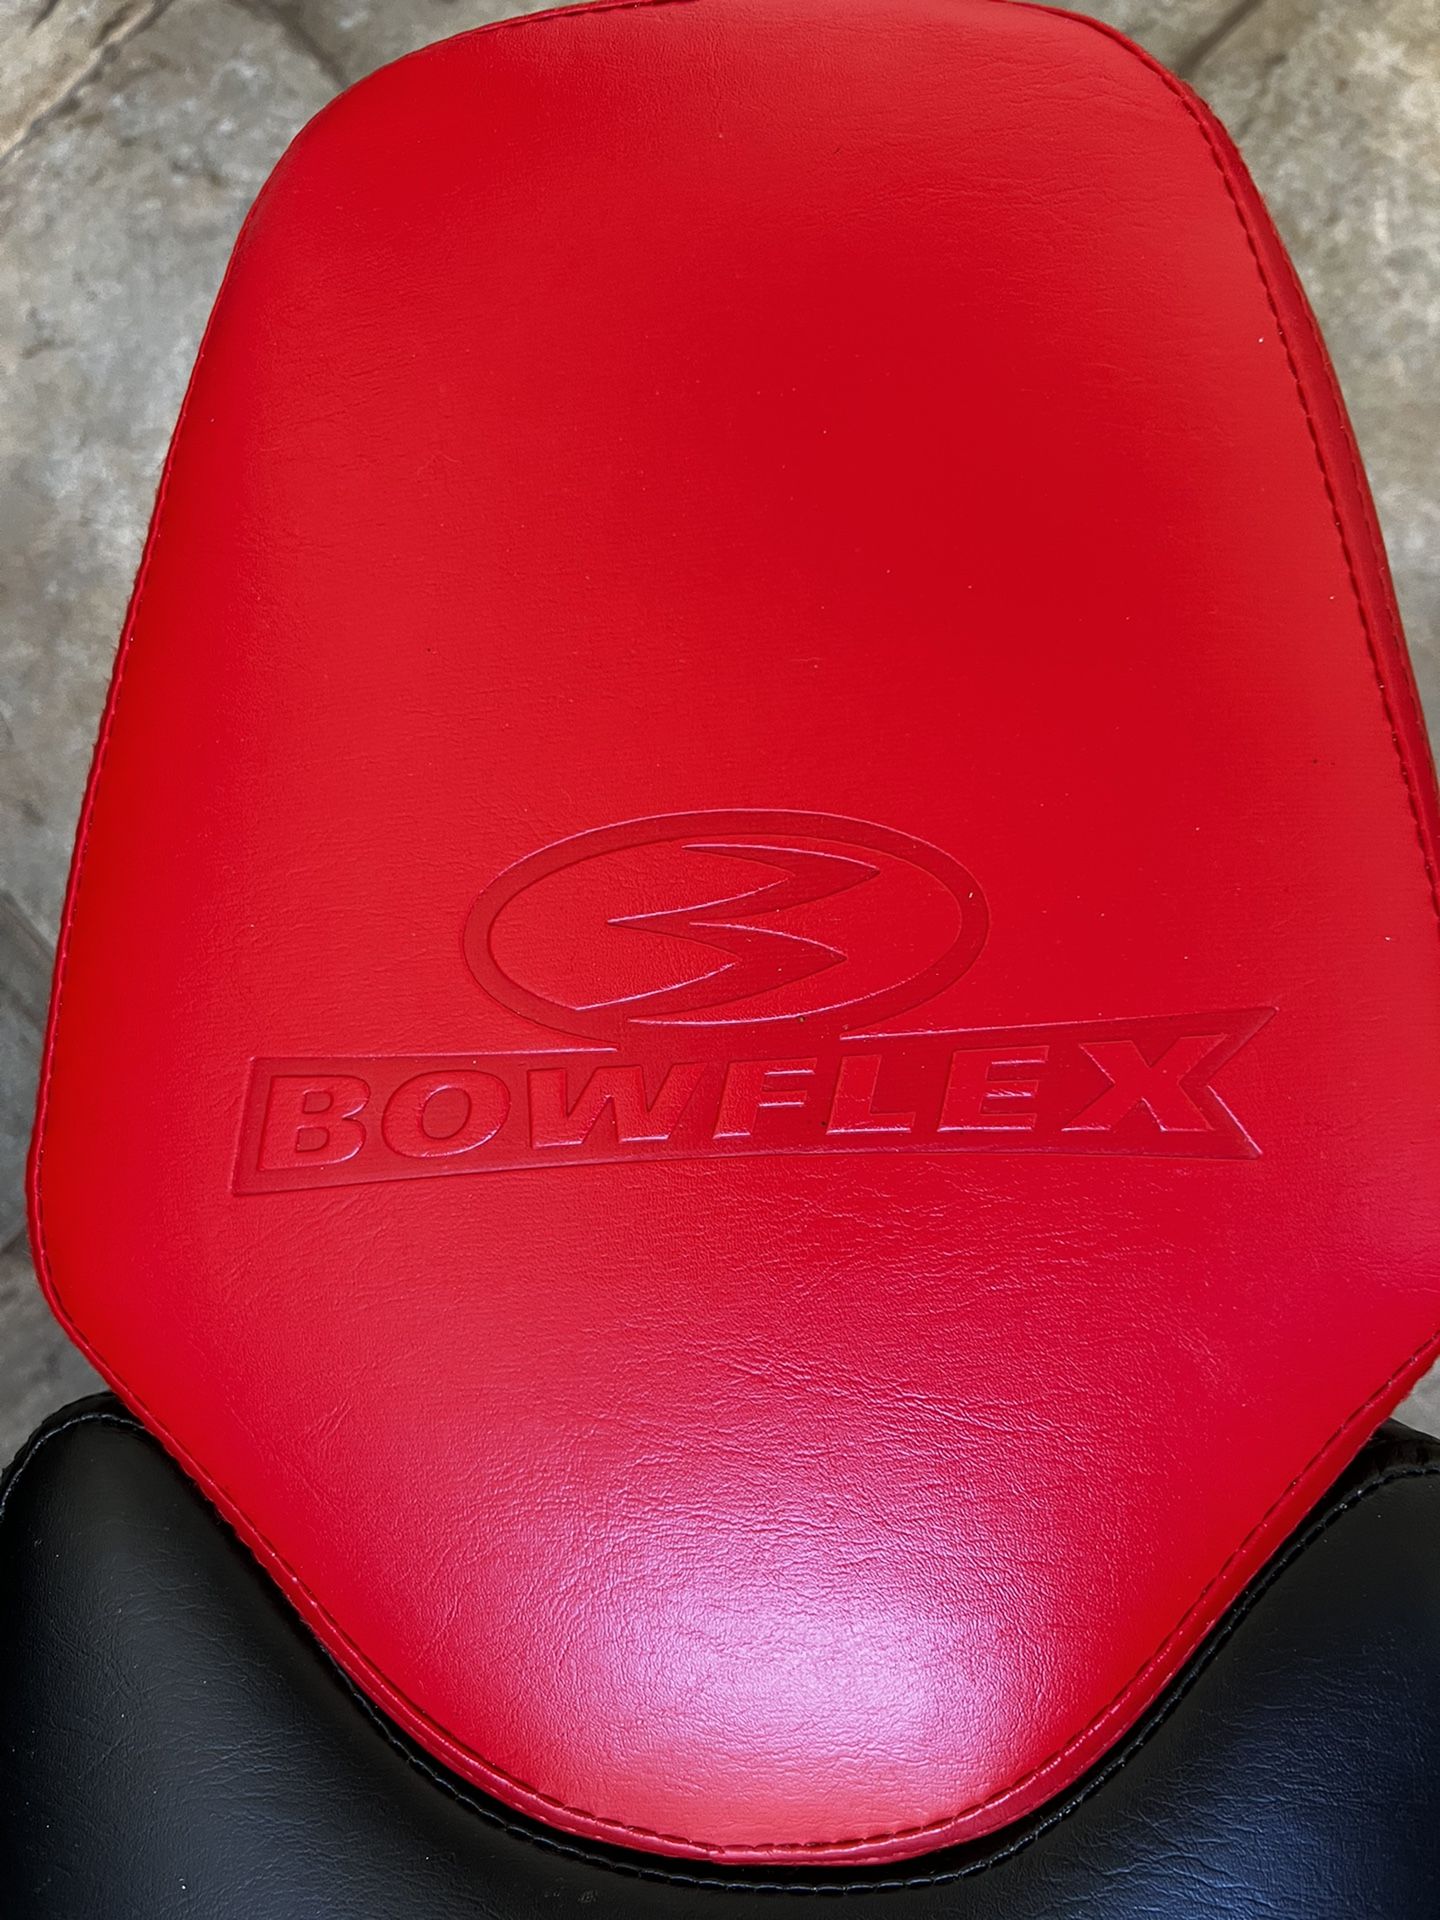 Bowflex Set